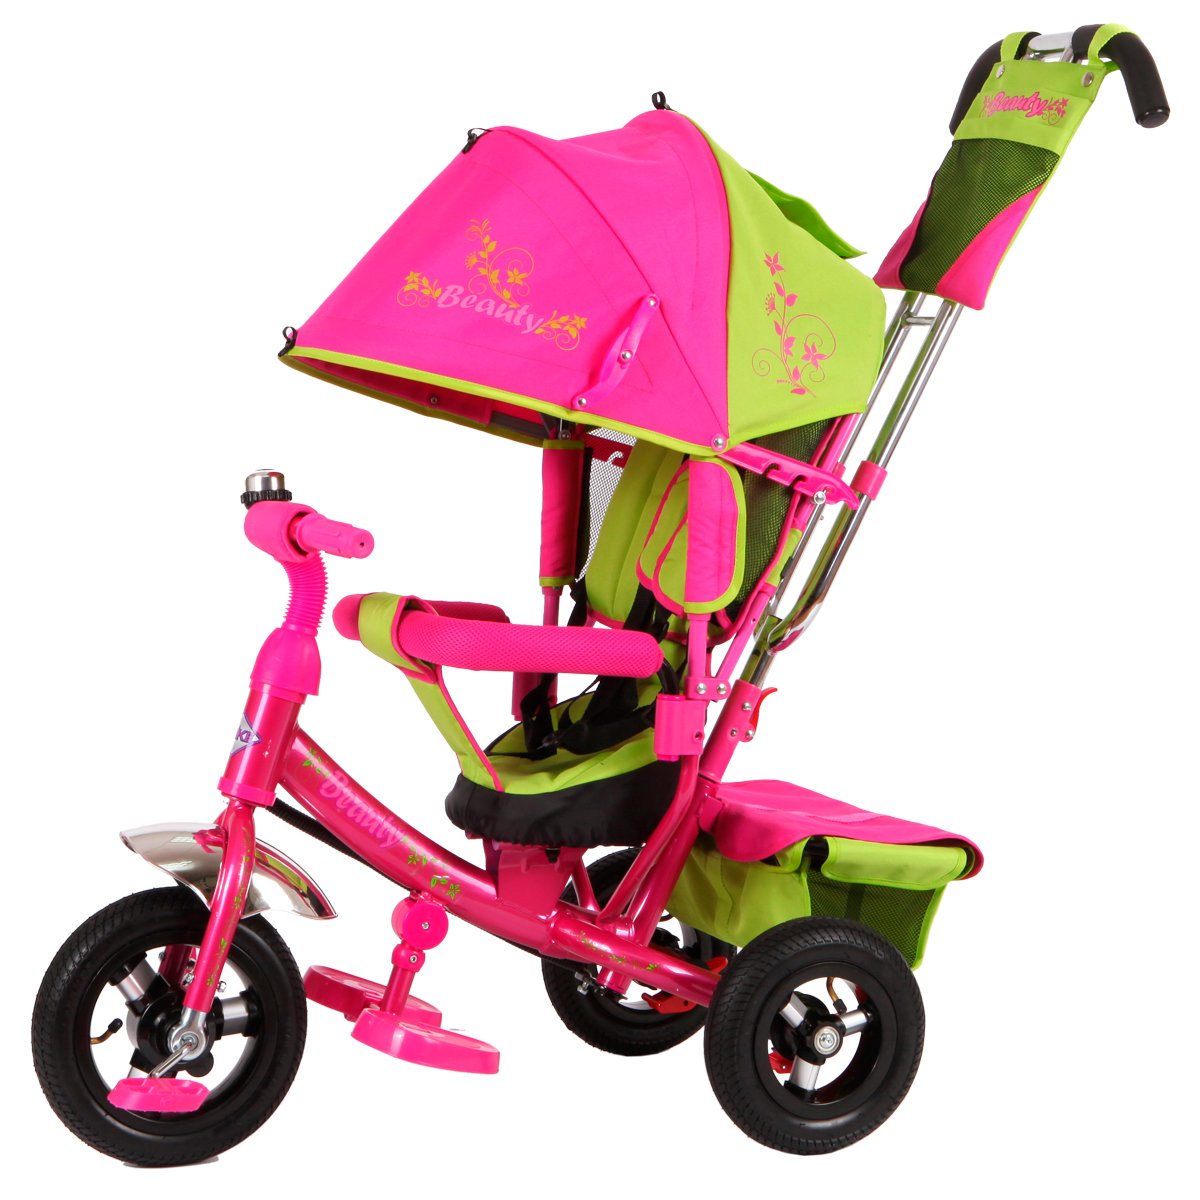 Колесо на велосипед с ручкой. Moby Kids Cosmo велосипед 3-колесный. Велосипед Beauty ba2 Trike. Трехколесный велосипед Beauty ba2. Трехколесный велосипед с ручкой кари зеленый xg6631-t16 61204010.